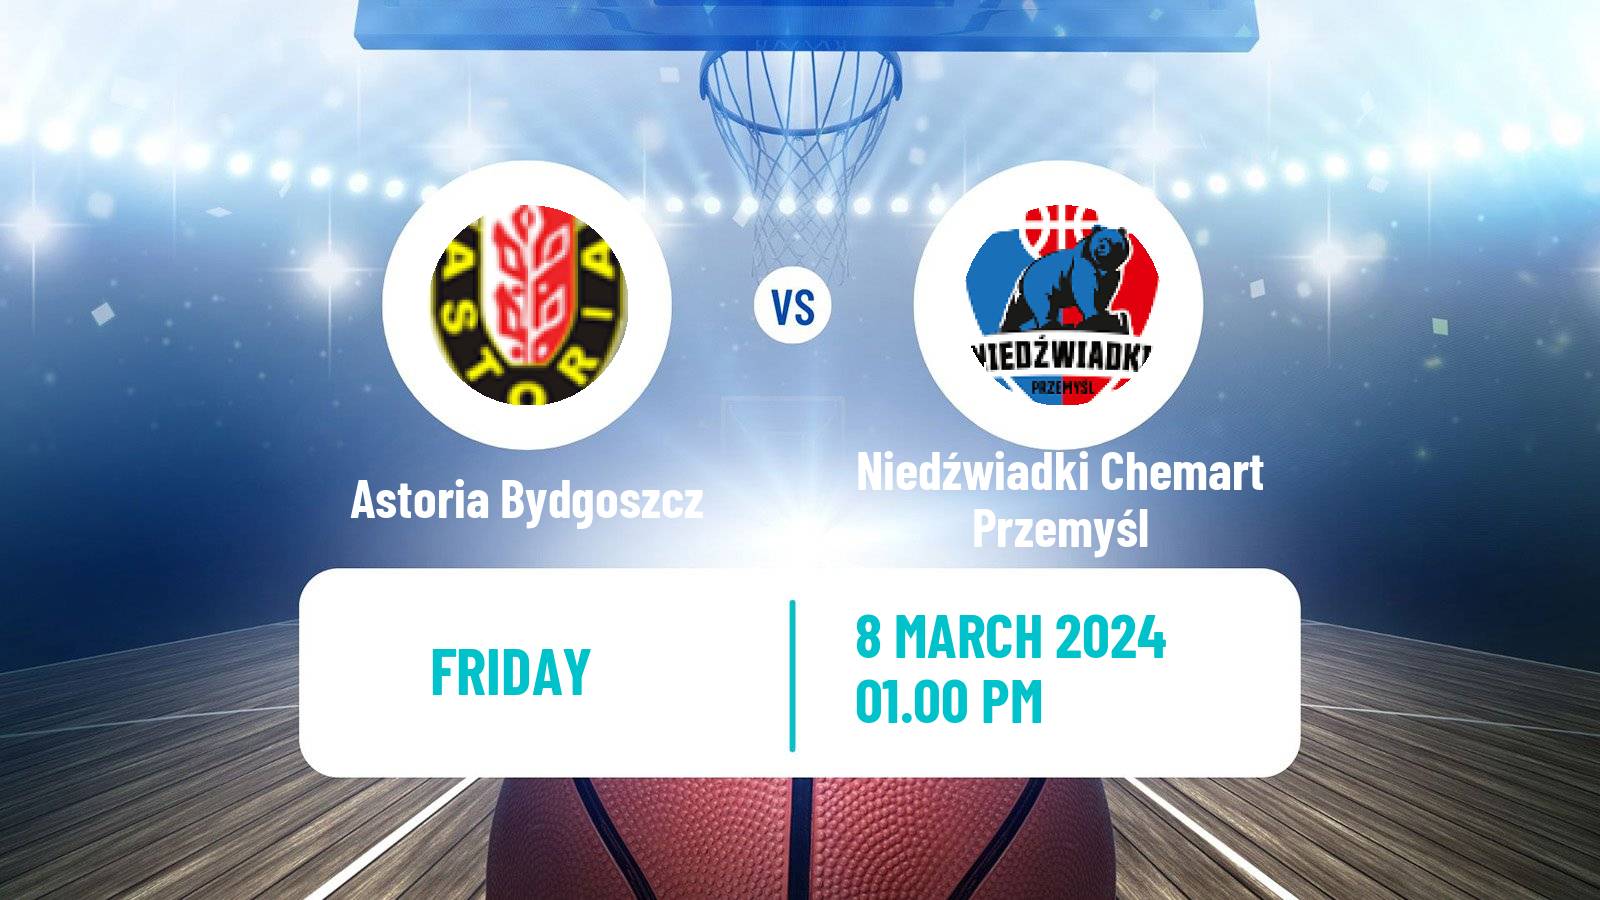 Basketball Polish 1 Liga Basketball Astoria Bydgoszcz - Niedźwiadki Chemart Przemyśl